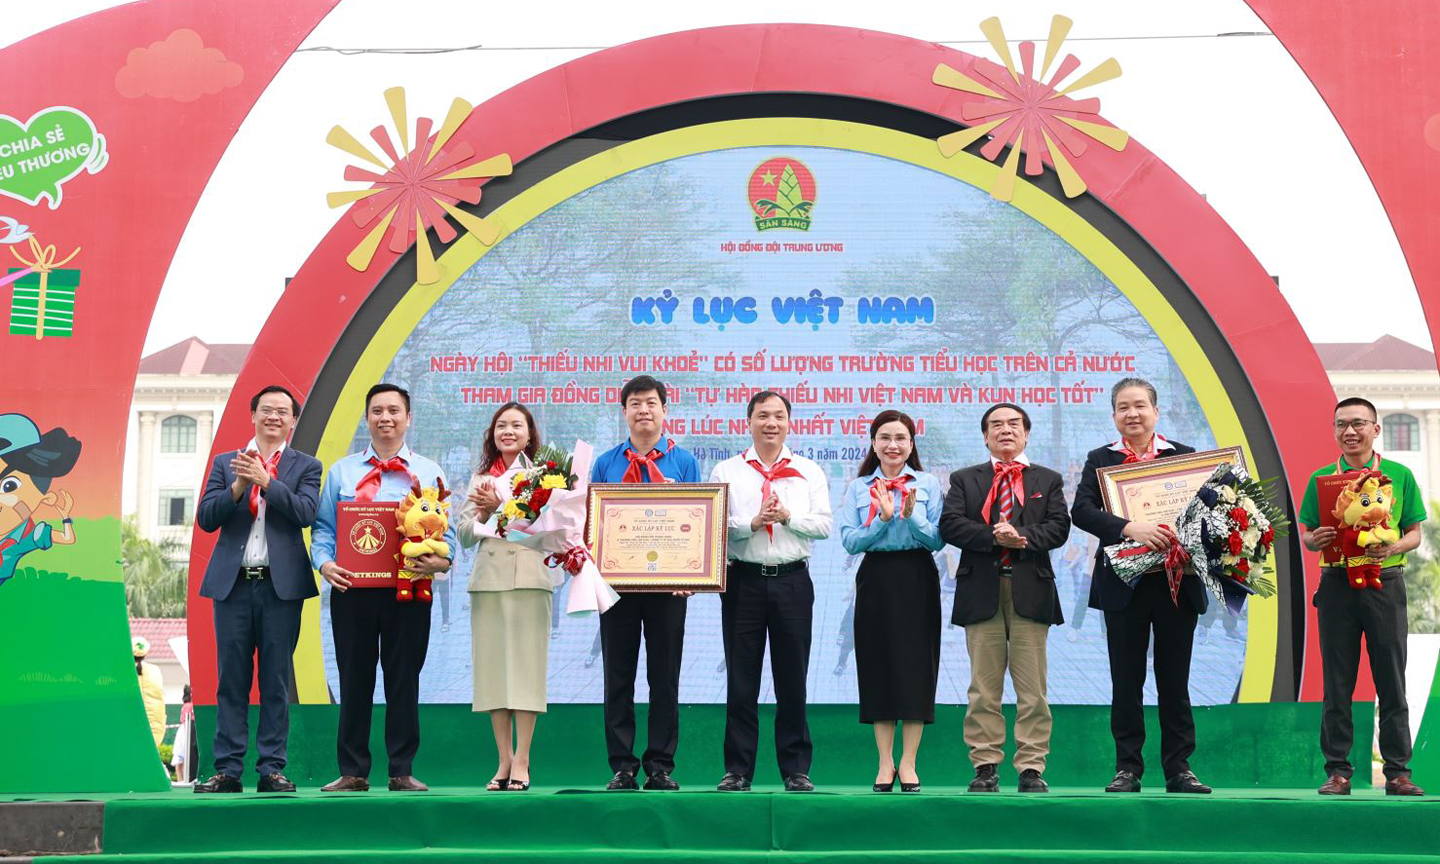 Đại diện Tổ chức Kỷ lục Việt Nam trao bảng chứng nhận kỷ lục quốc gia cho Hội đồng Đội Trung ương và Công ty Cổ phần Sữa quốc tế sau chương trình đồng diễn. 